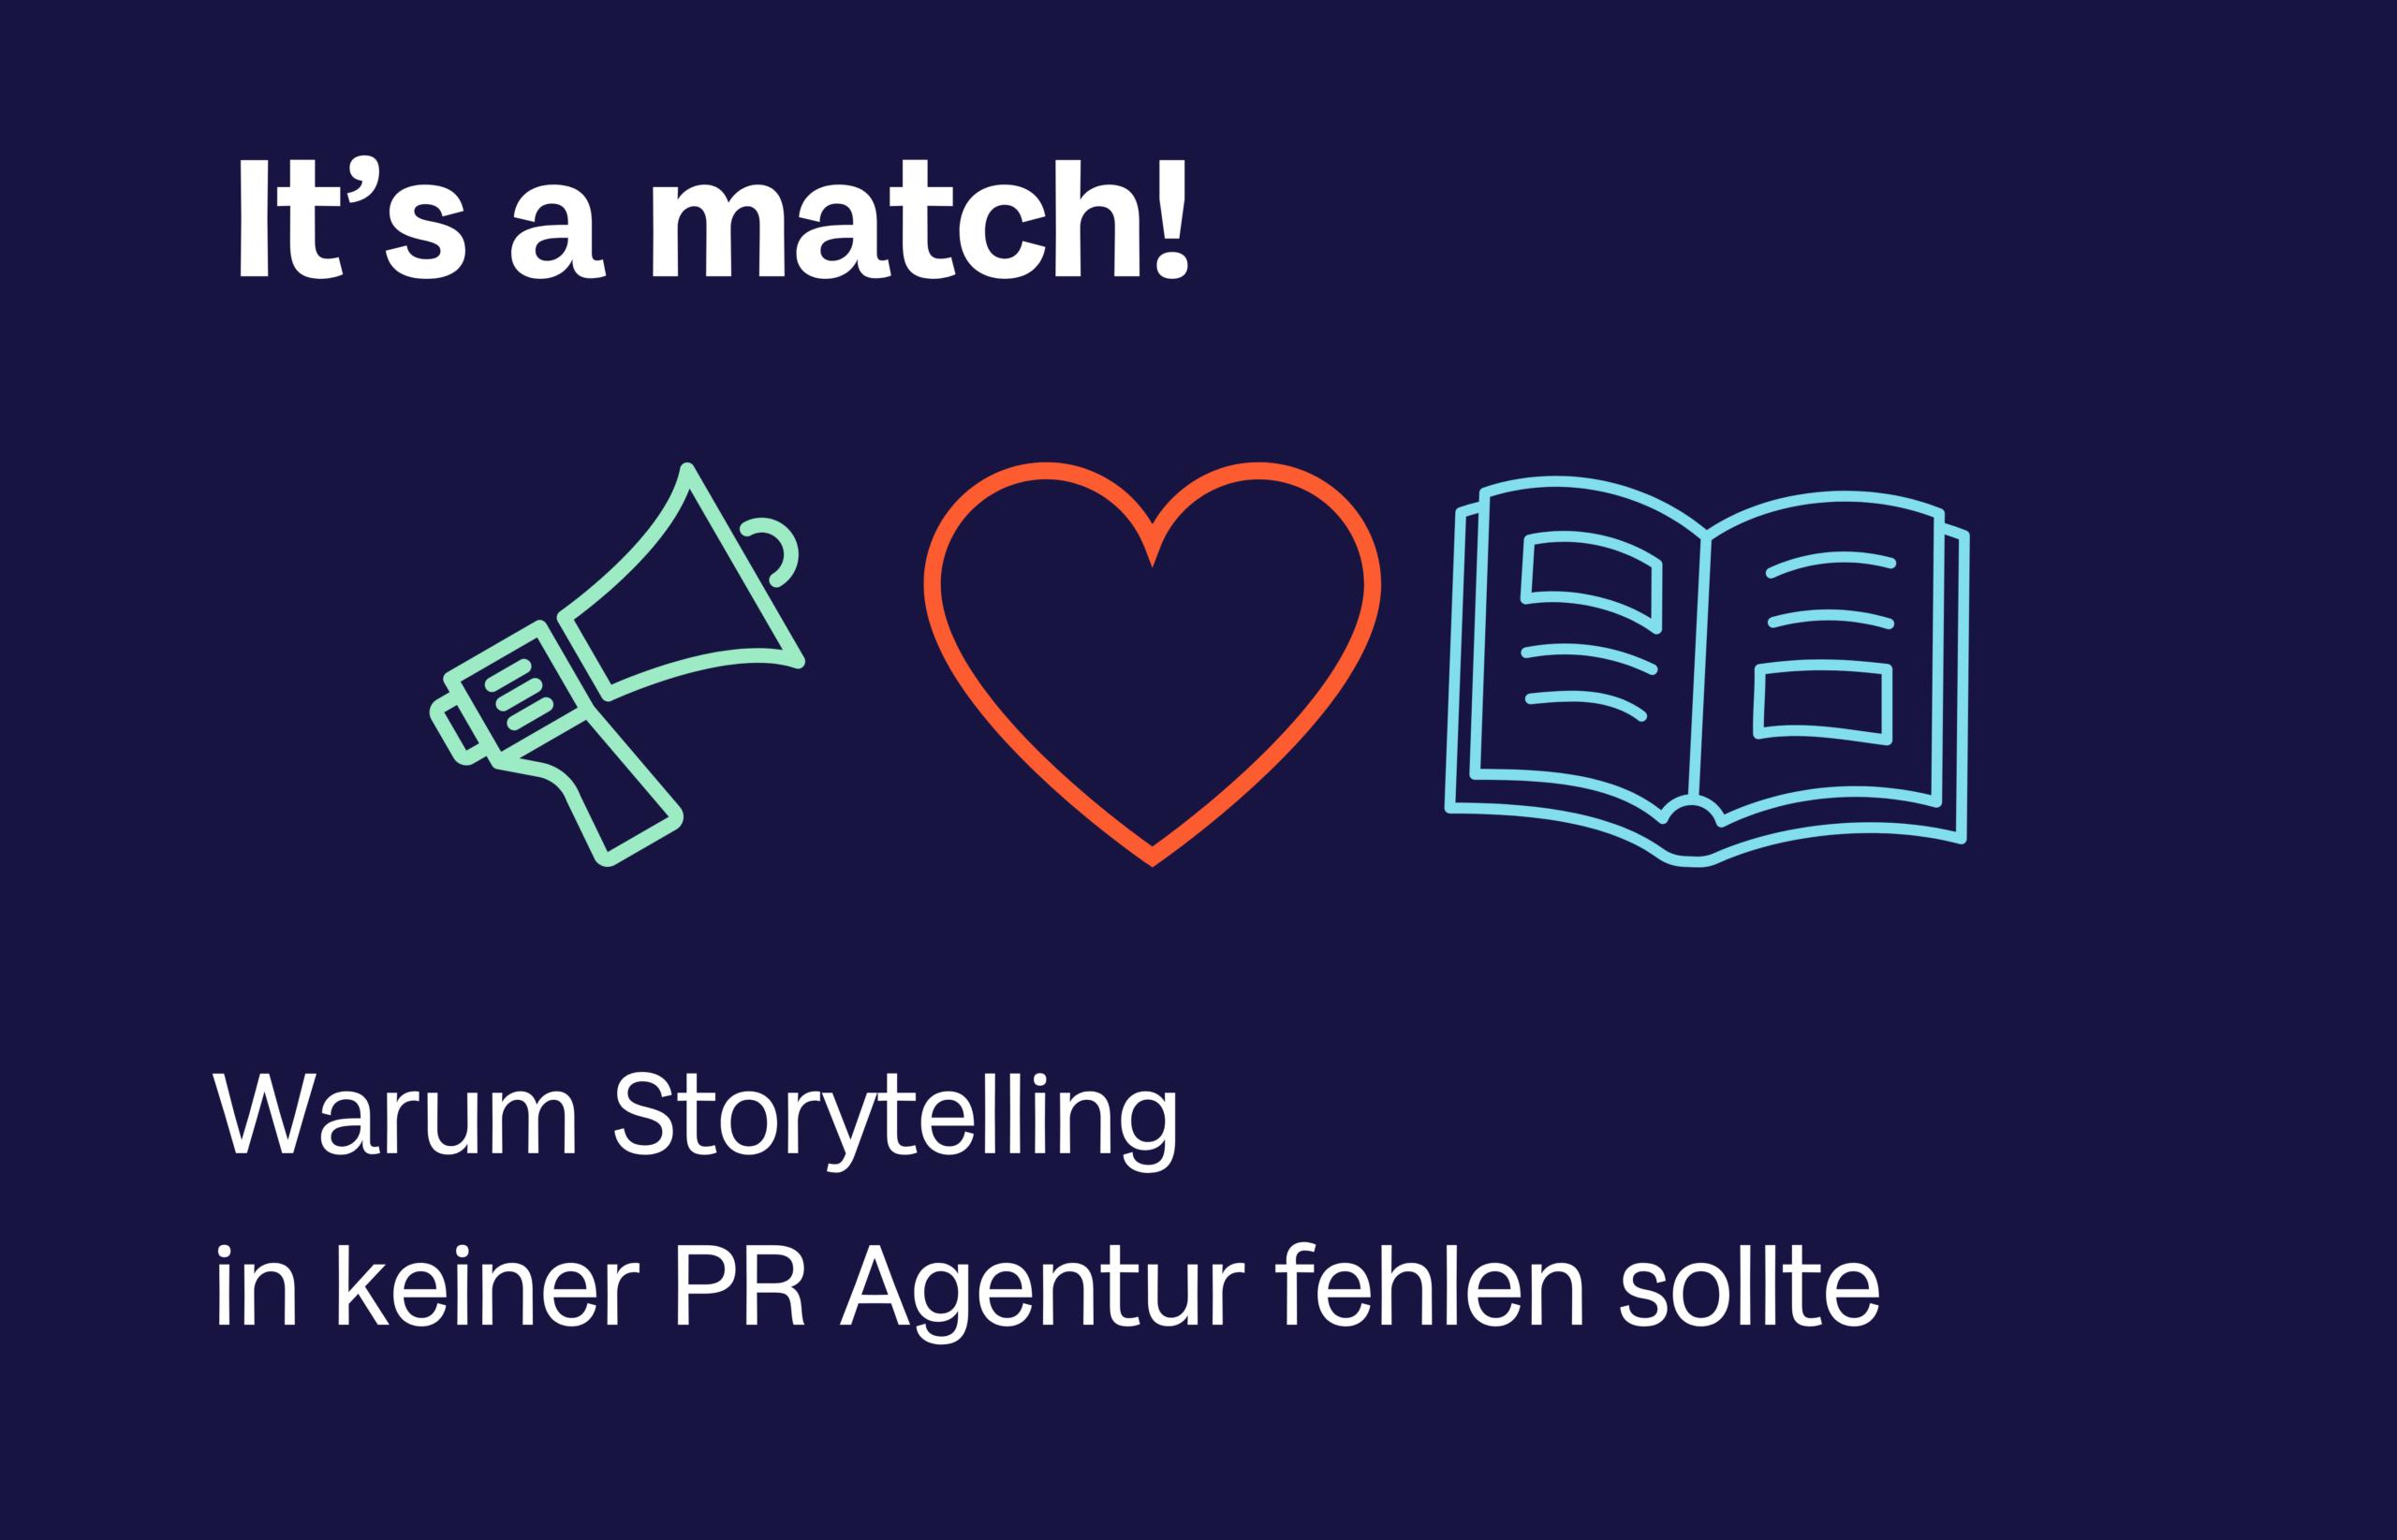 It’s a match: Warum Storytelling in keiner PR-Agentur fehlen sollte